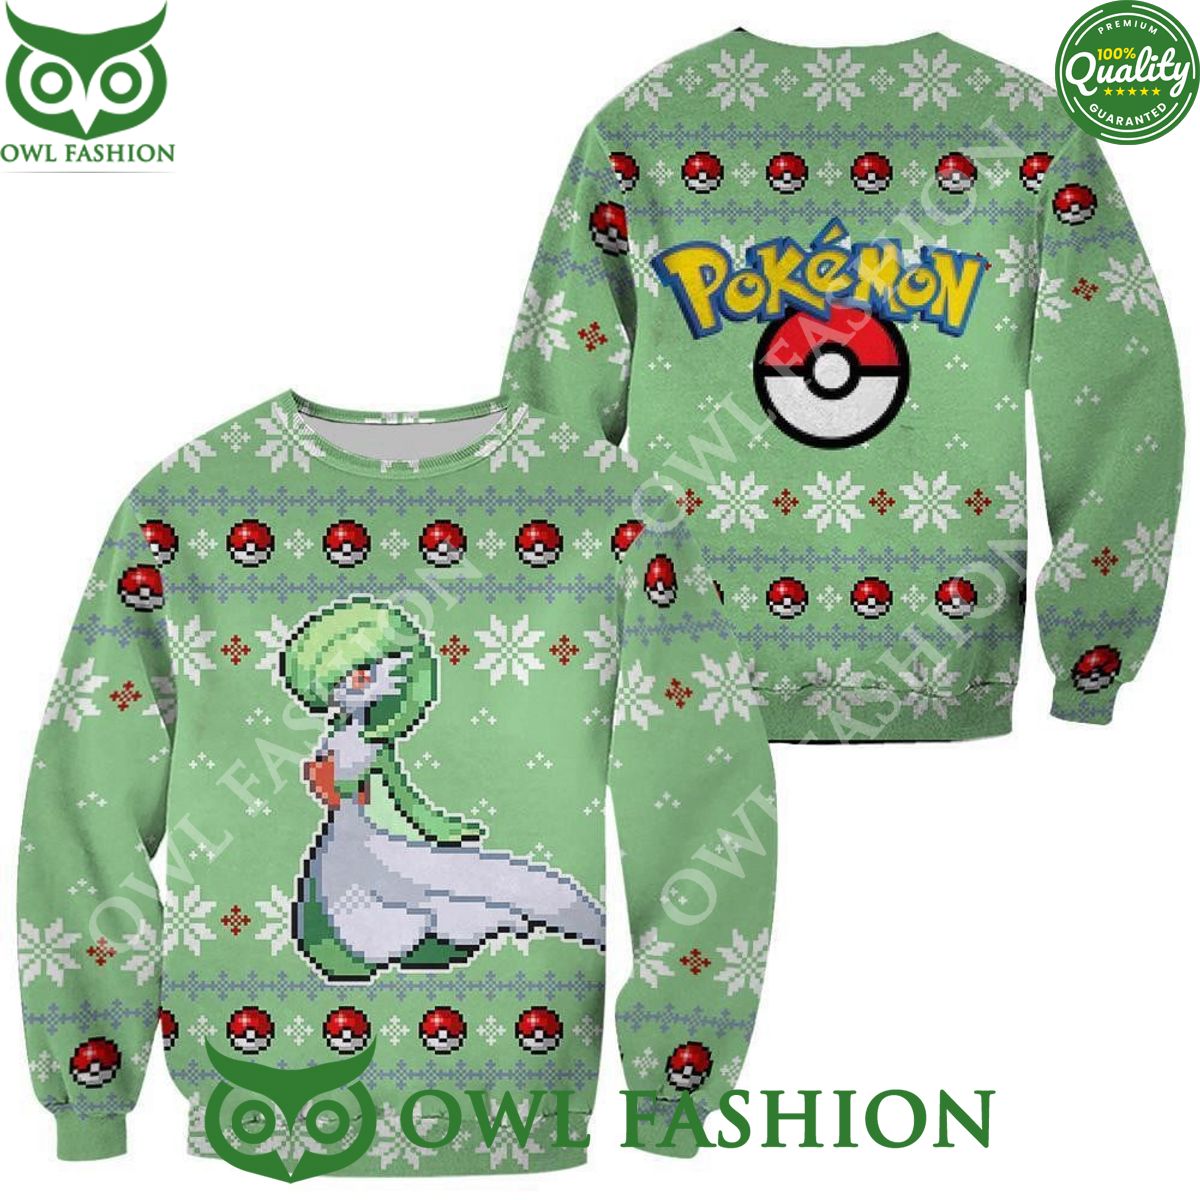 Gardevoir Pokemon Ugly Christmas Sweater Jumper Xmas Gift